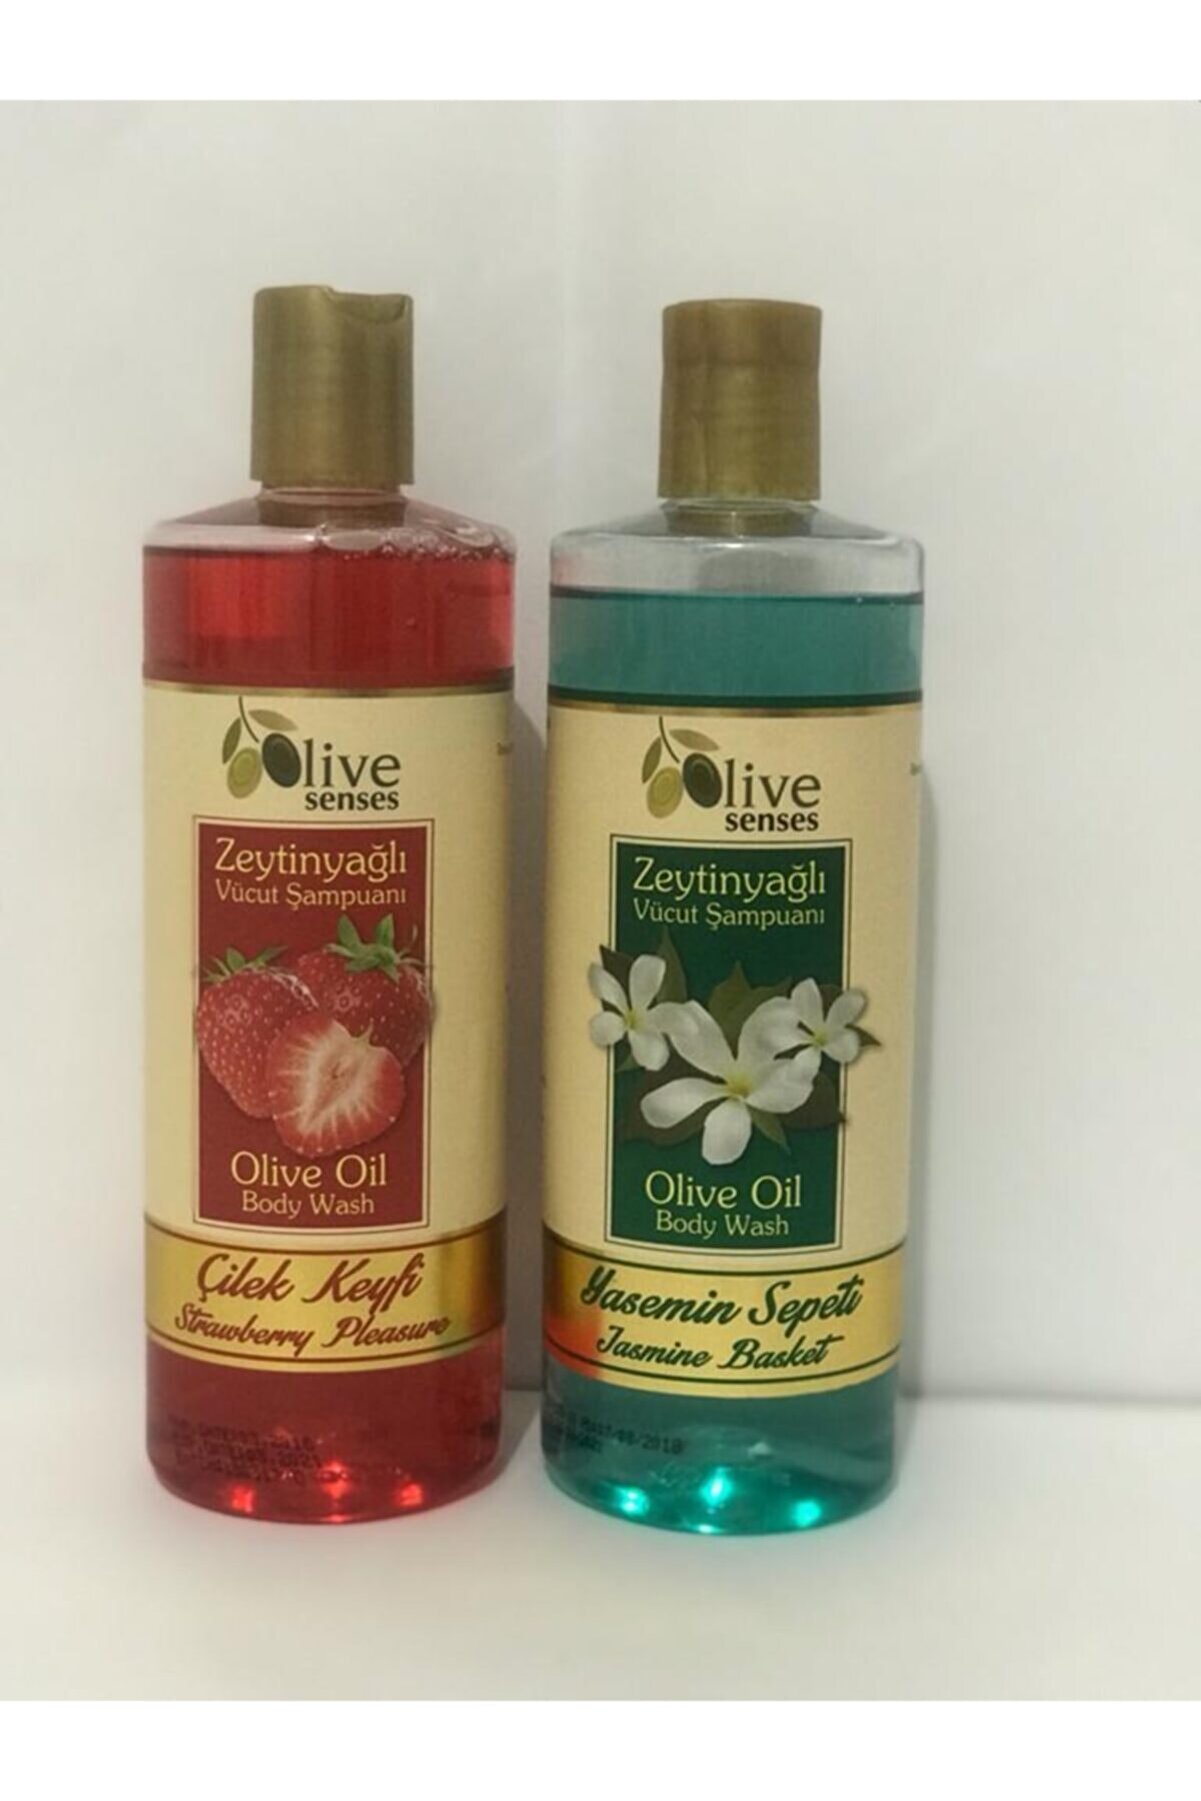 Oilive Olive Senses Zeytinyağlı Vücut Şampuanı Çilek Keyfi Alana Yasemin Sepeti Vücut Şampuanı Hediye